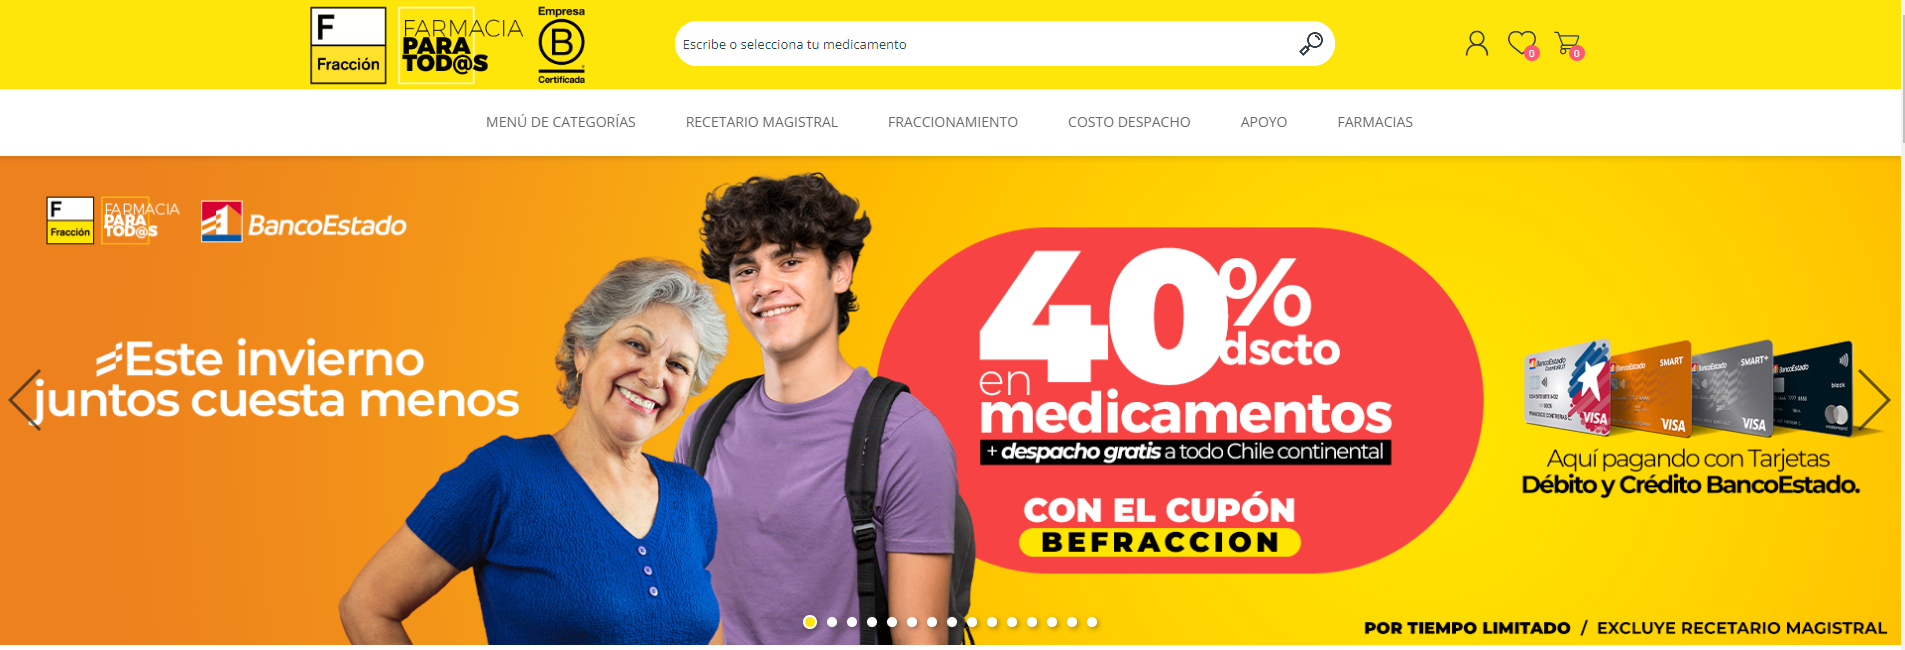 Página web de farmacia Fracción